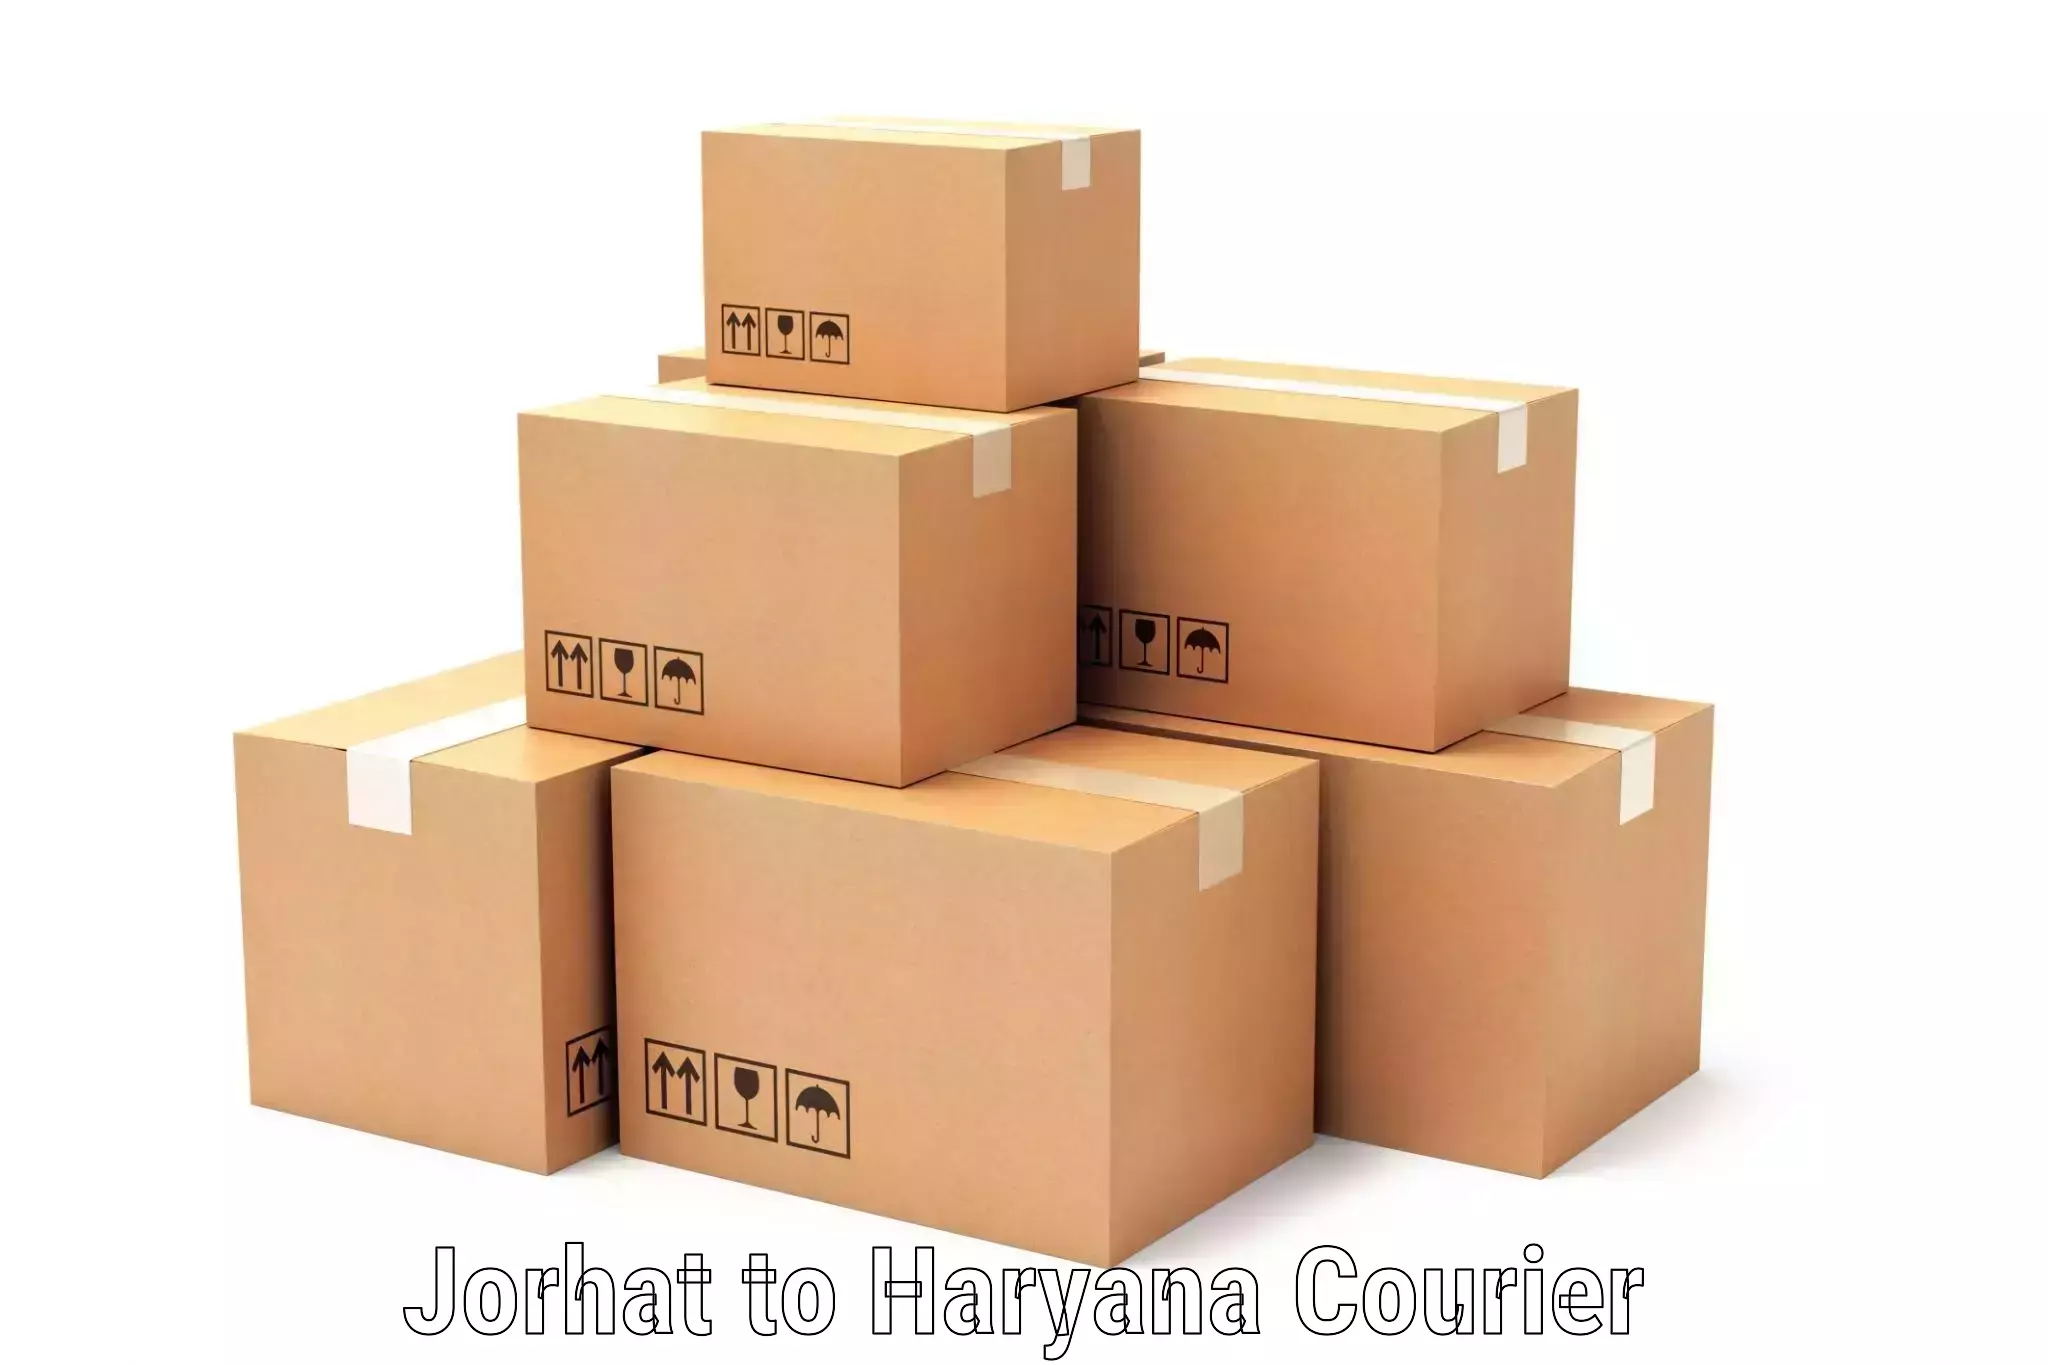 Modern courier technology Jorhat to Assandh